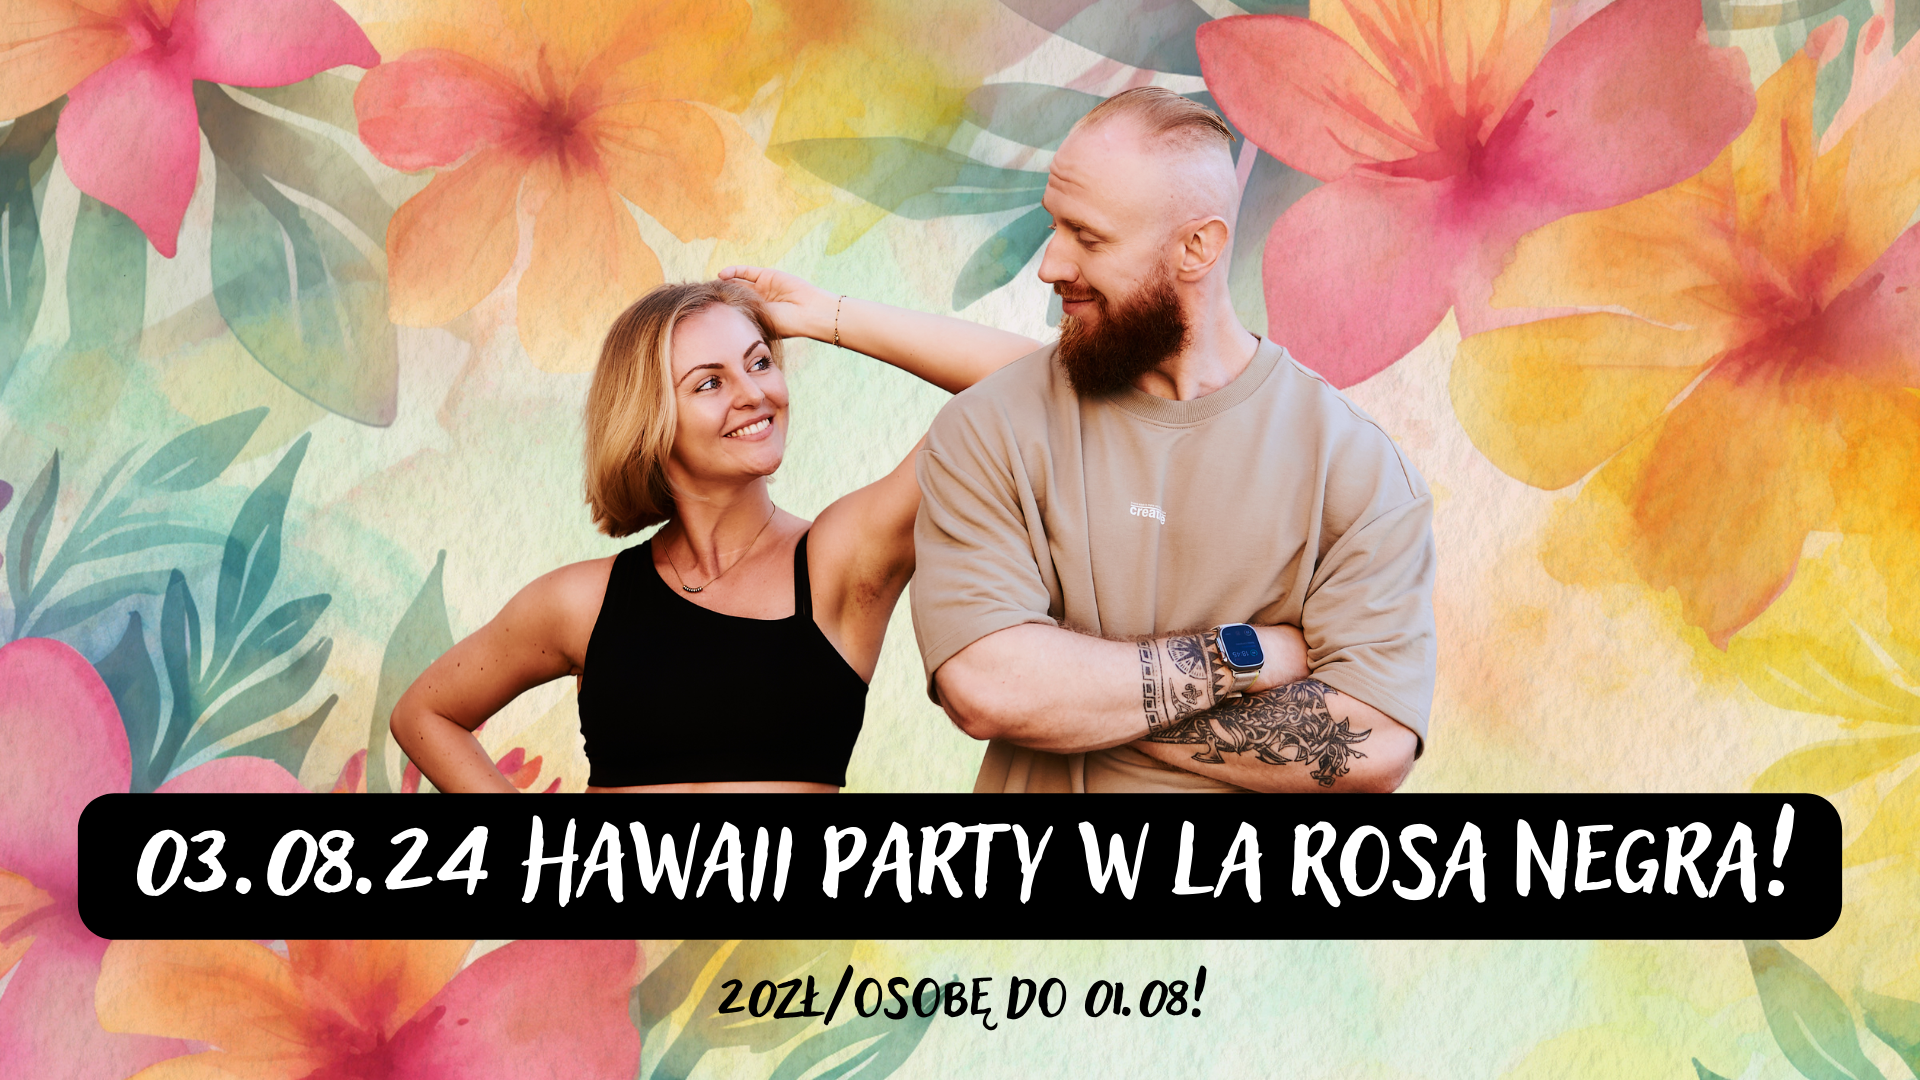 Hawaii Party w La Rosa Negra! 